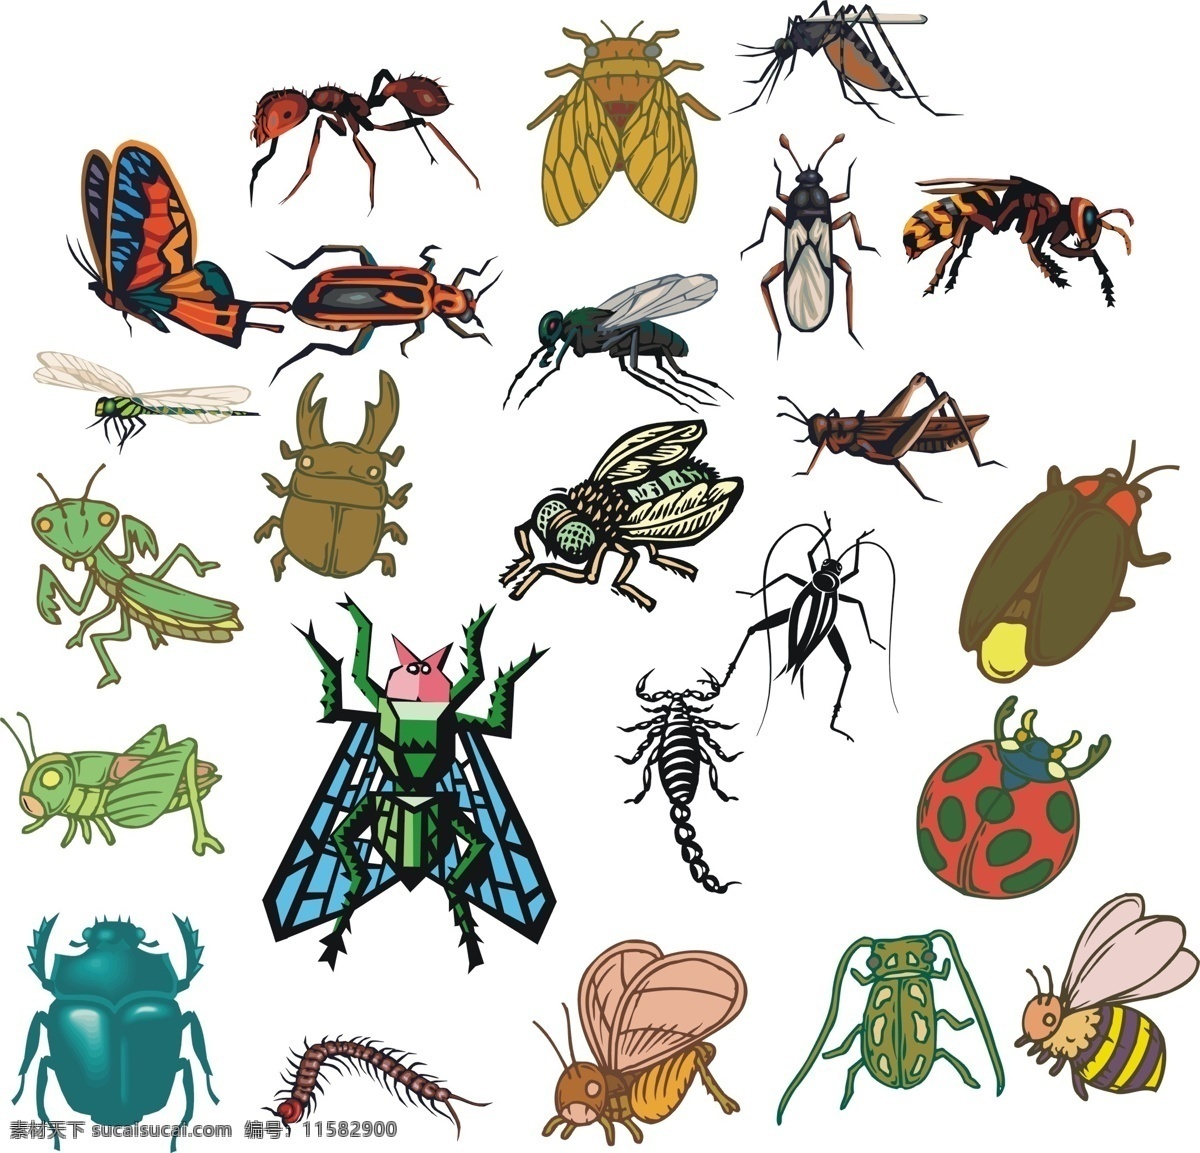 自然世界 矢量昆虫 昆虫 蚂蚁蟋蟀 禅 蜜蜂 蝴蝶 蜻蜓 蜈蚣 瓢虫 蝗虫 生物世界